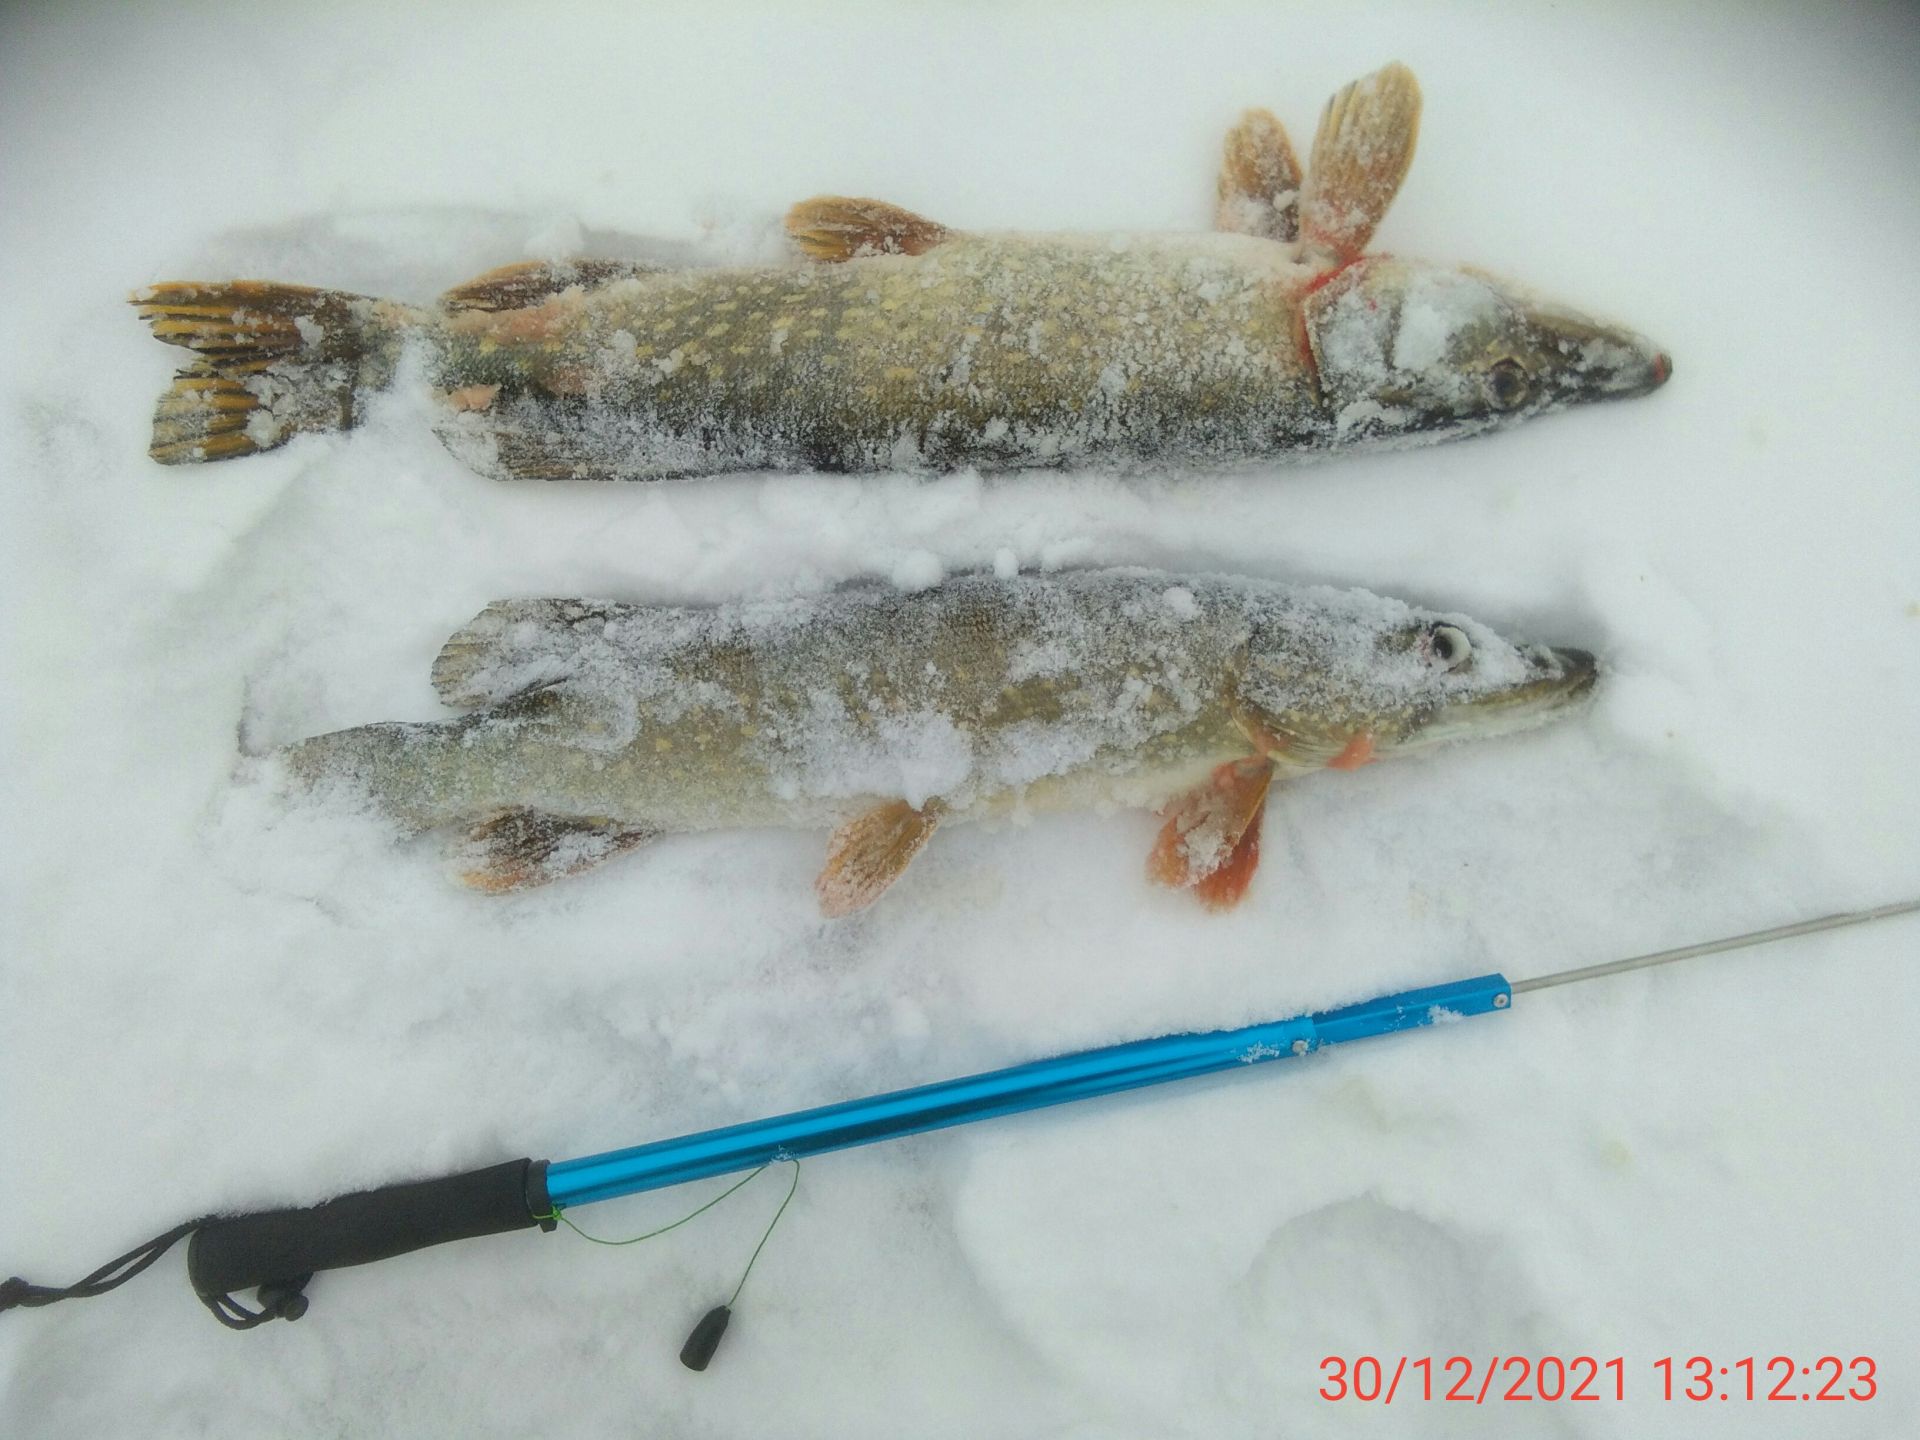  Рыбалка фото зі звіту про риболовлю  11843